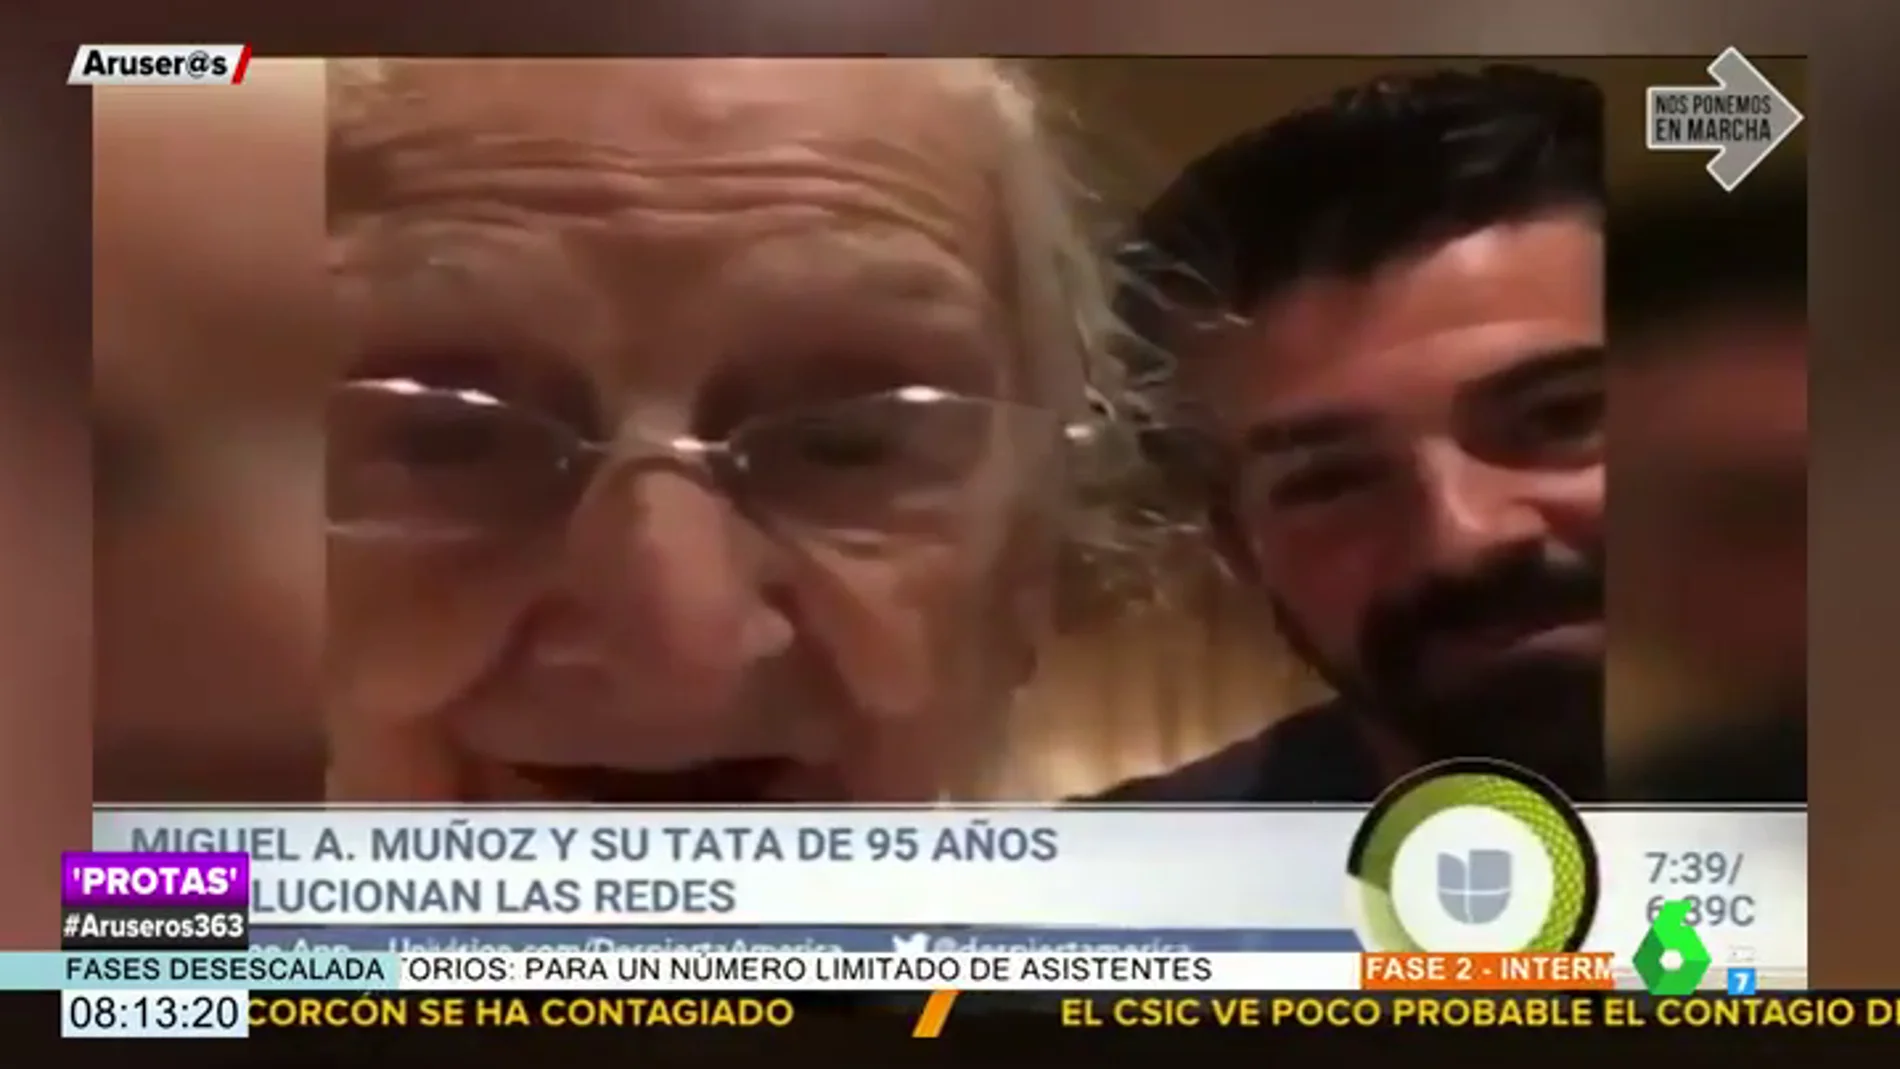 La tierna relación de Miguel Ángel Muñoz y su 'tata' llega hasta la televisión americana